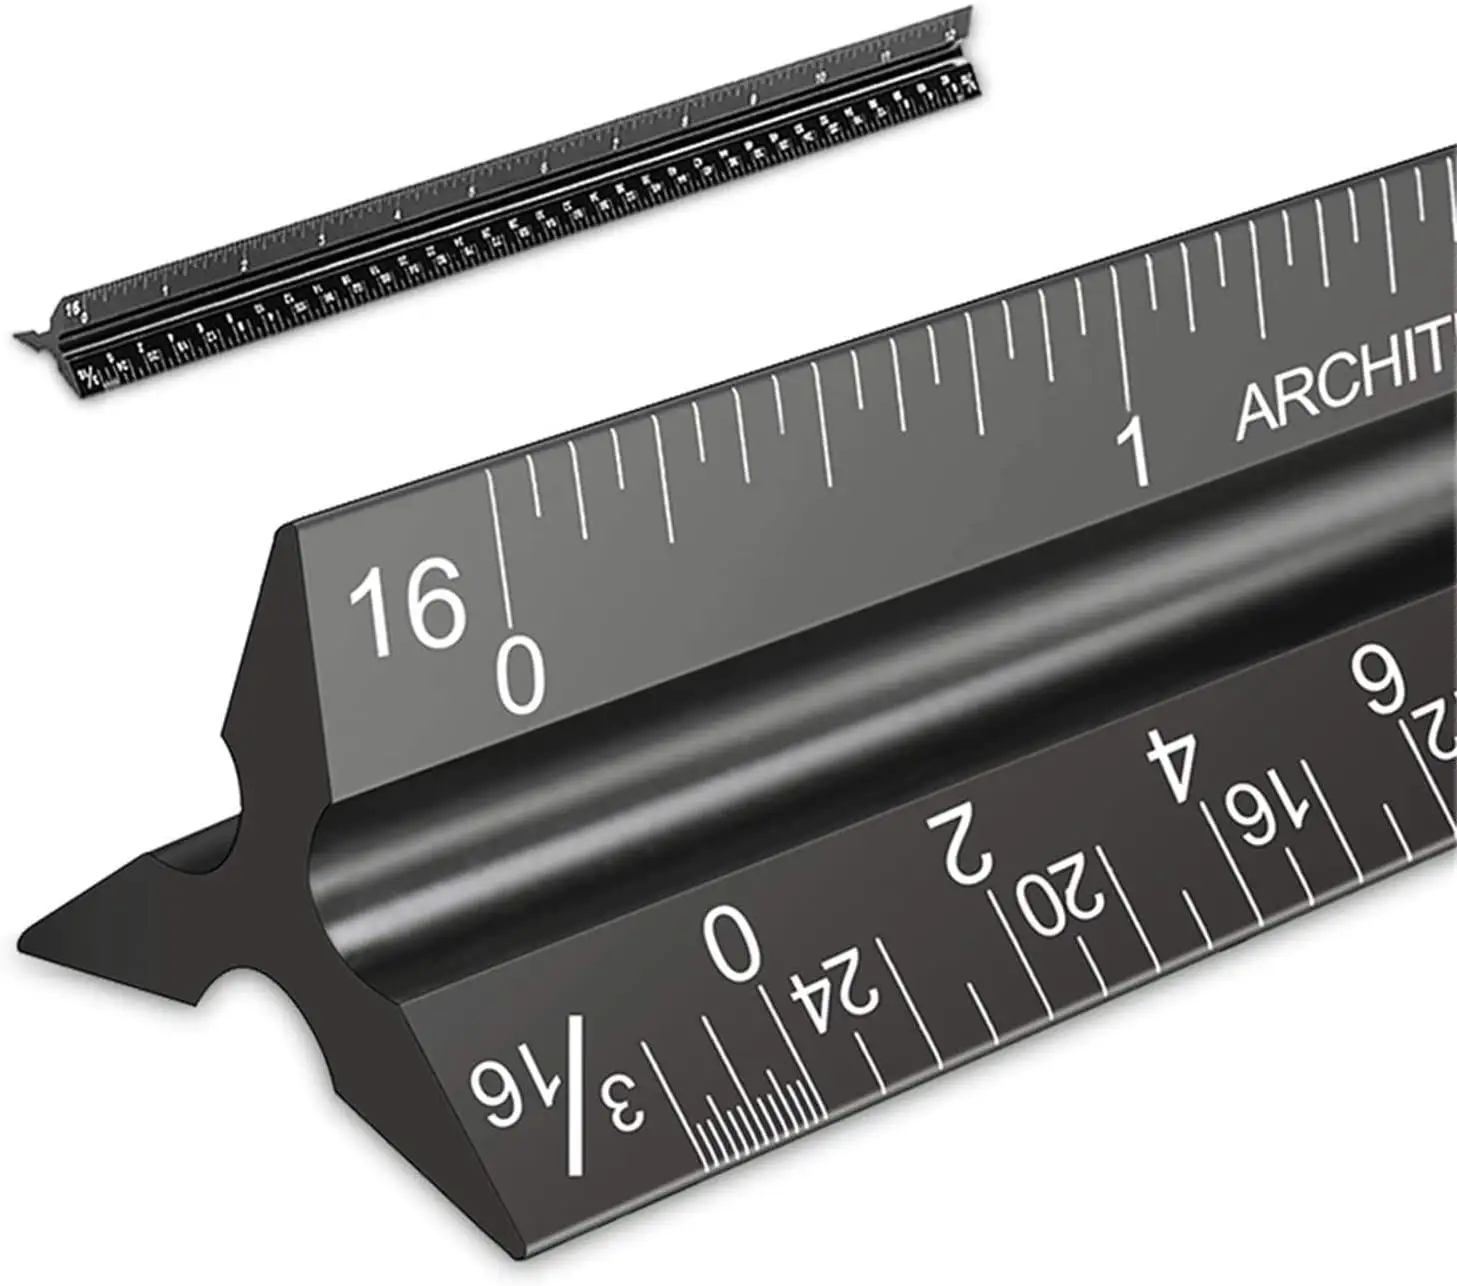 Régua de triângulo arquitetural, régua métrica de escala técnica de 30cm liga de alumínio com 3 lados